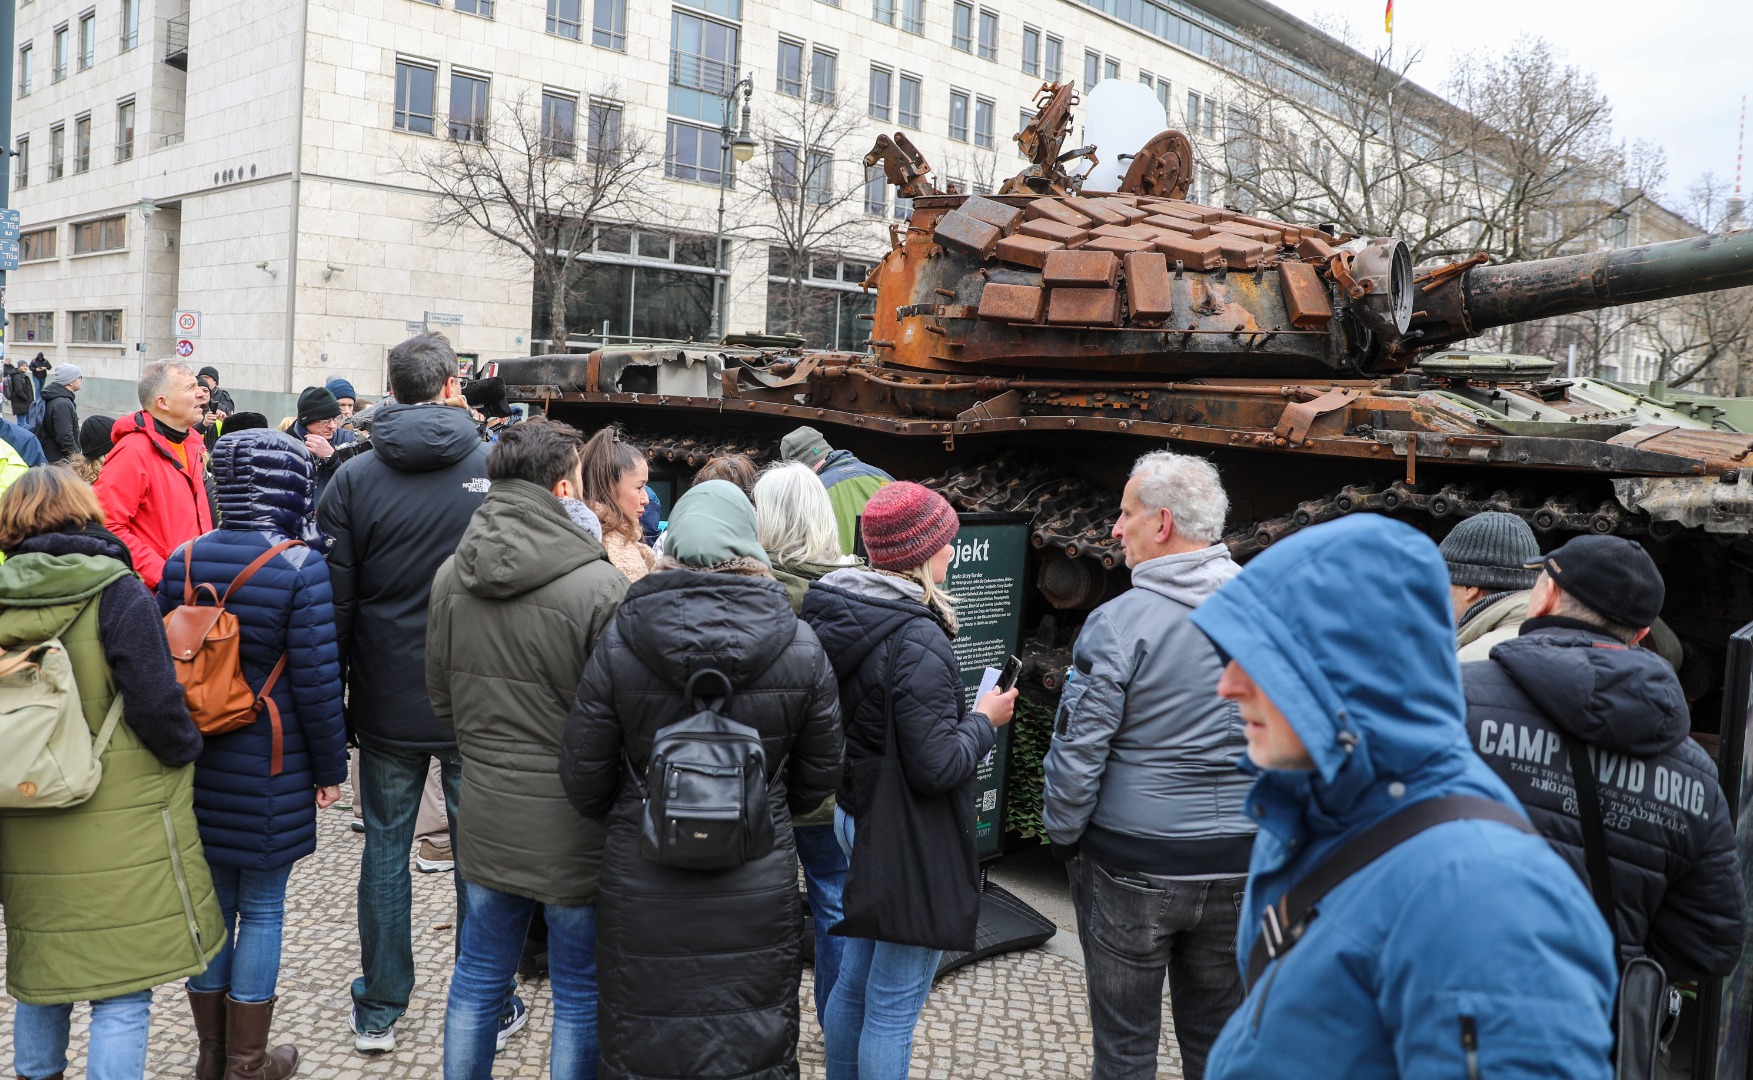 Rusya'ya tanklı protesto. Berlin Büyükelçiliği'nin önüne tahrip edilmiş tank bıraktılar